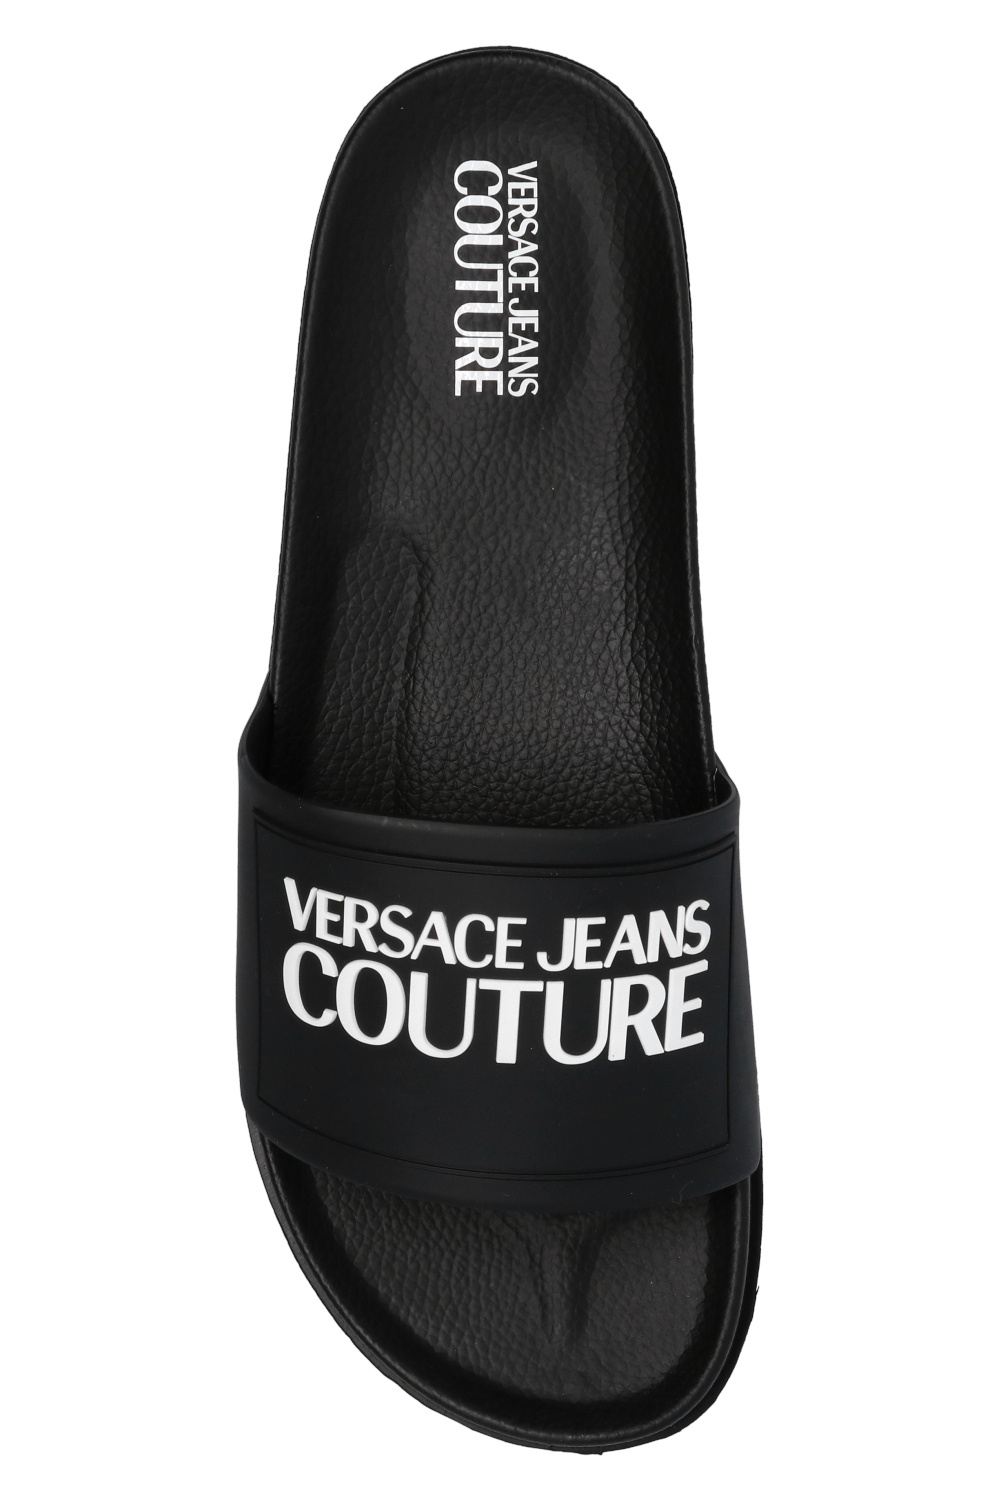 versace jeans flip flops